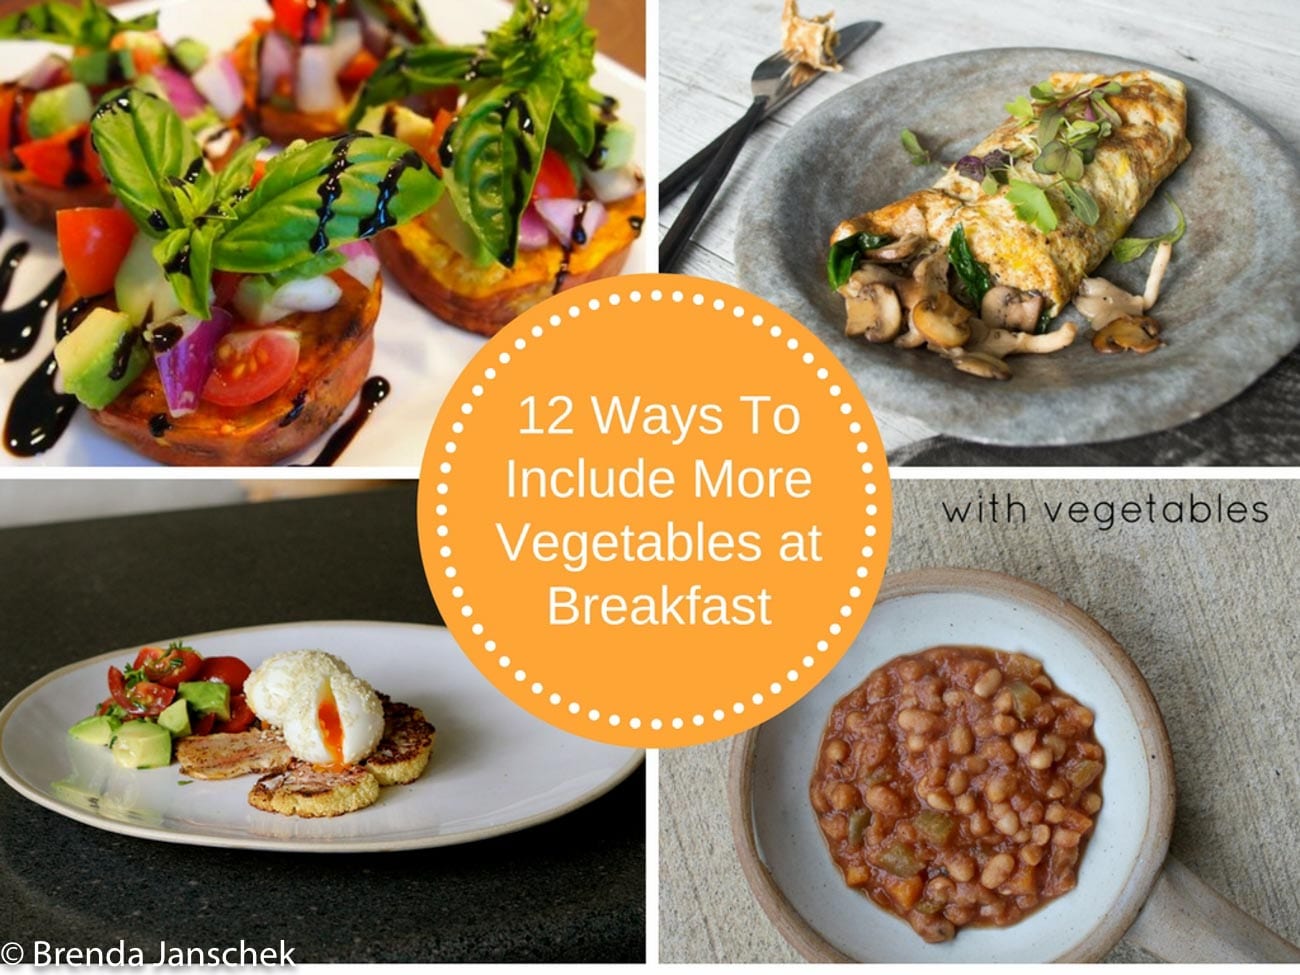 brenda-janschek-12-ways-to-include-more-vegetables-at-breakfast